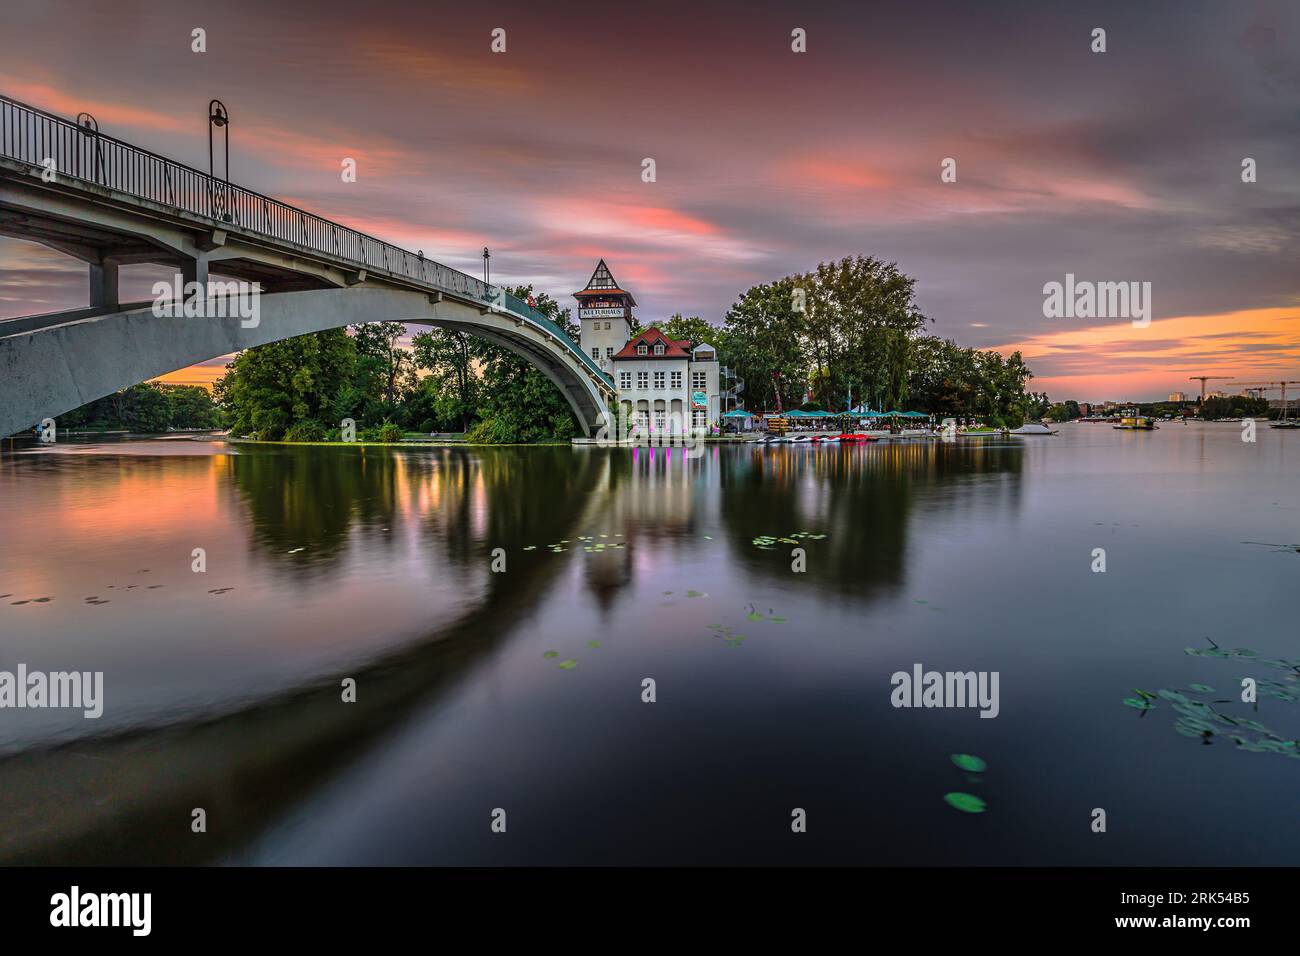 Coucher de soleil à Berlin avec ciel coloré. Pont sur la Spree à l'Insel der Jugend le soir en été. Maison de culture illuminée avec café en plein air Banque D'Images